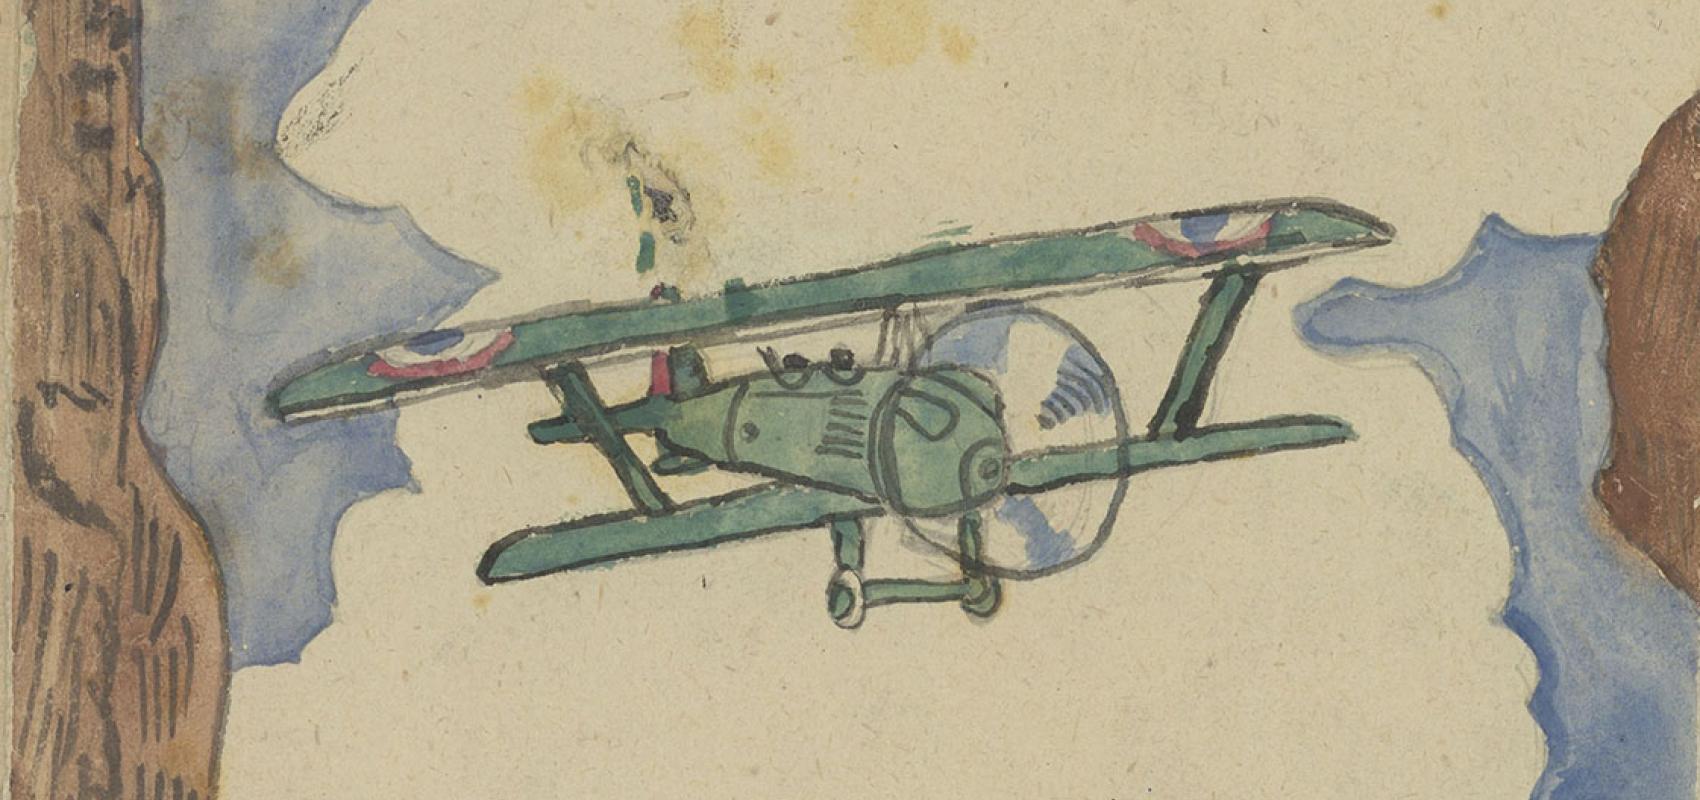 Max Tetelbaum,  « Avion », planche d’un Cahier de 13 dessins, dessin au crayons de couleur, aquarelle, encre noire.  BnF, département des Estampes et de la photographie  -  - BnF